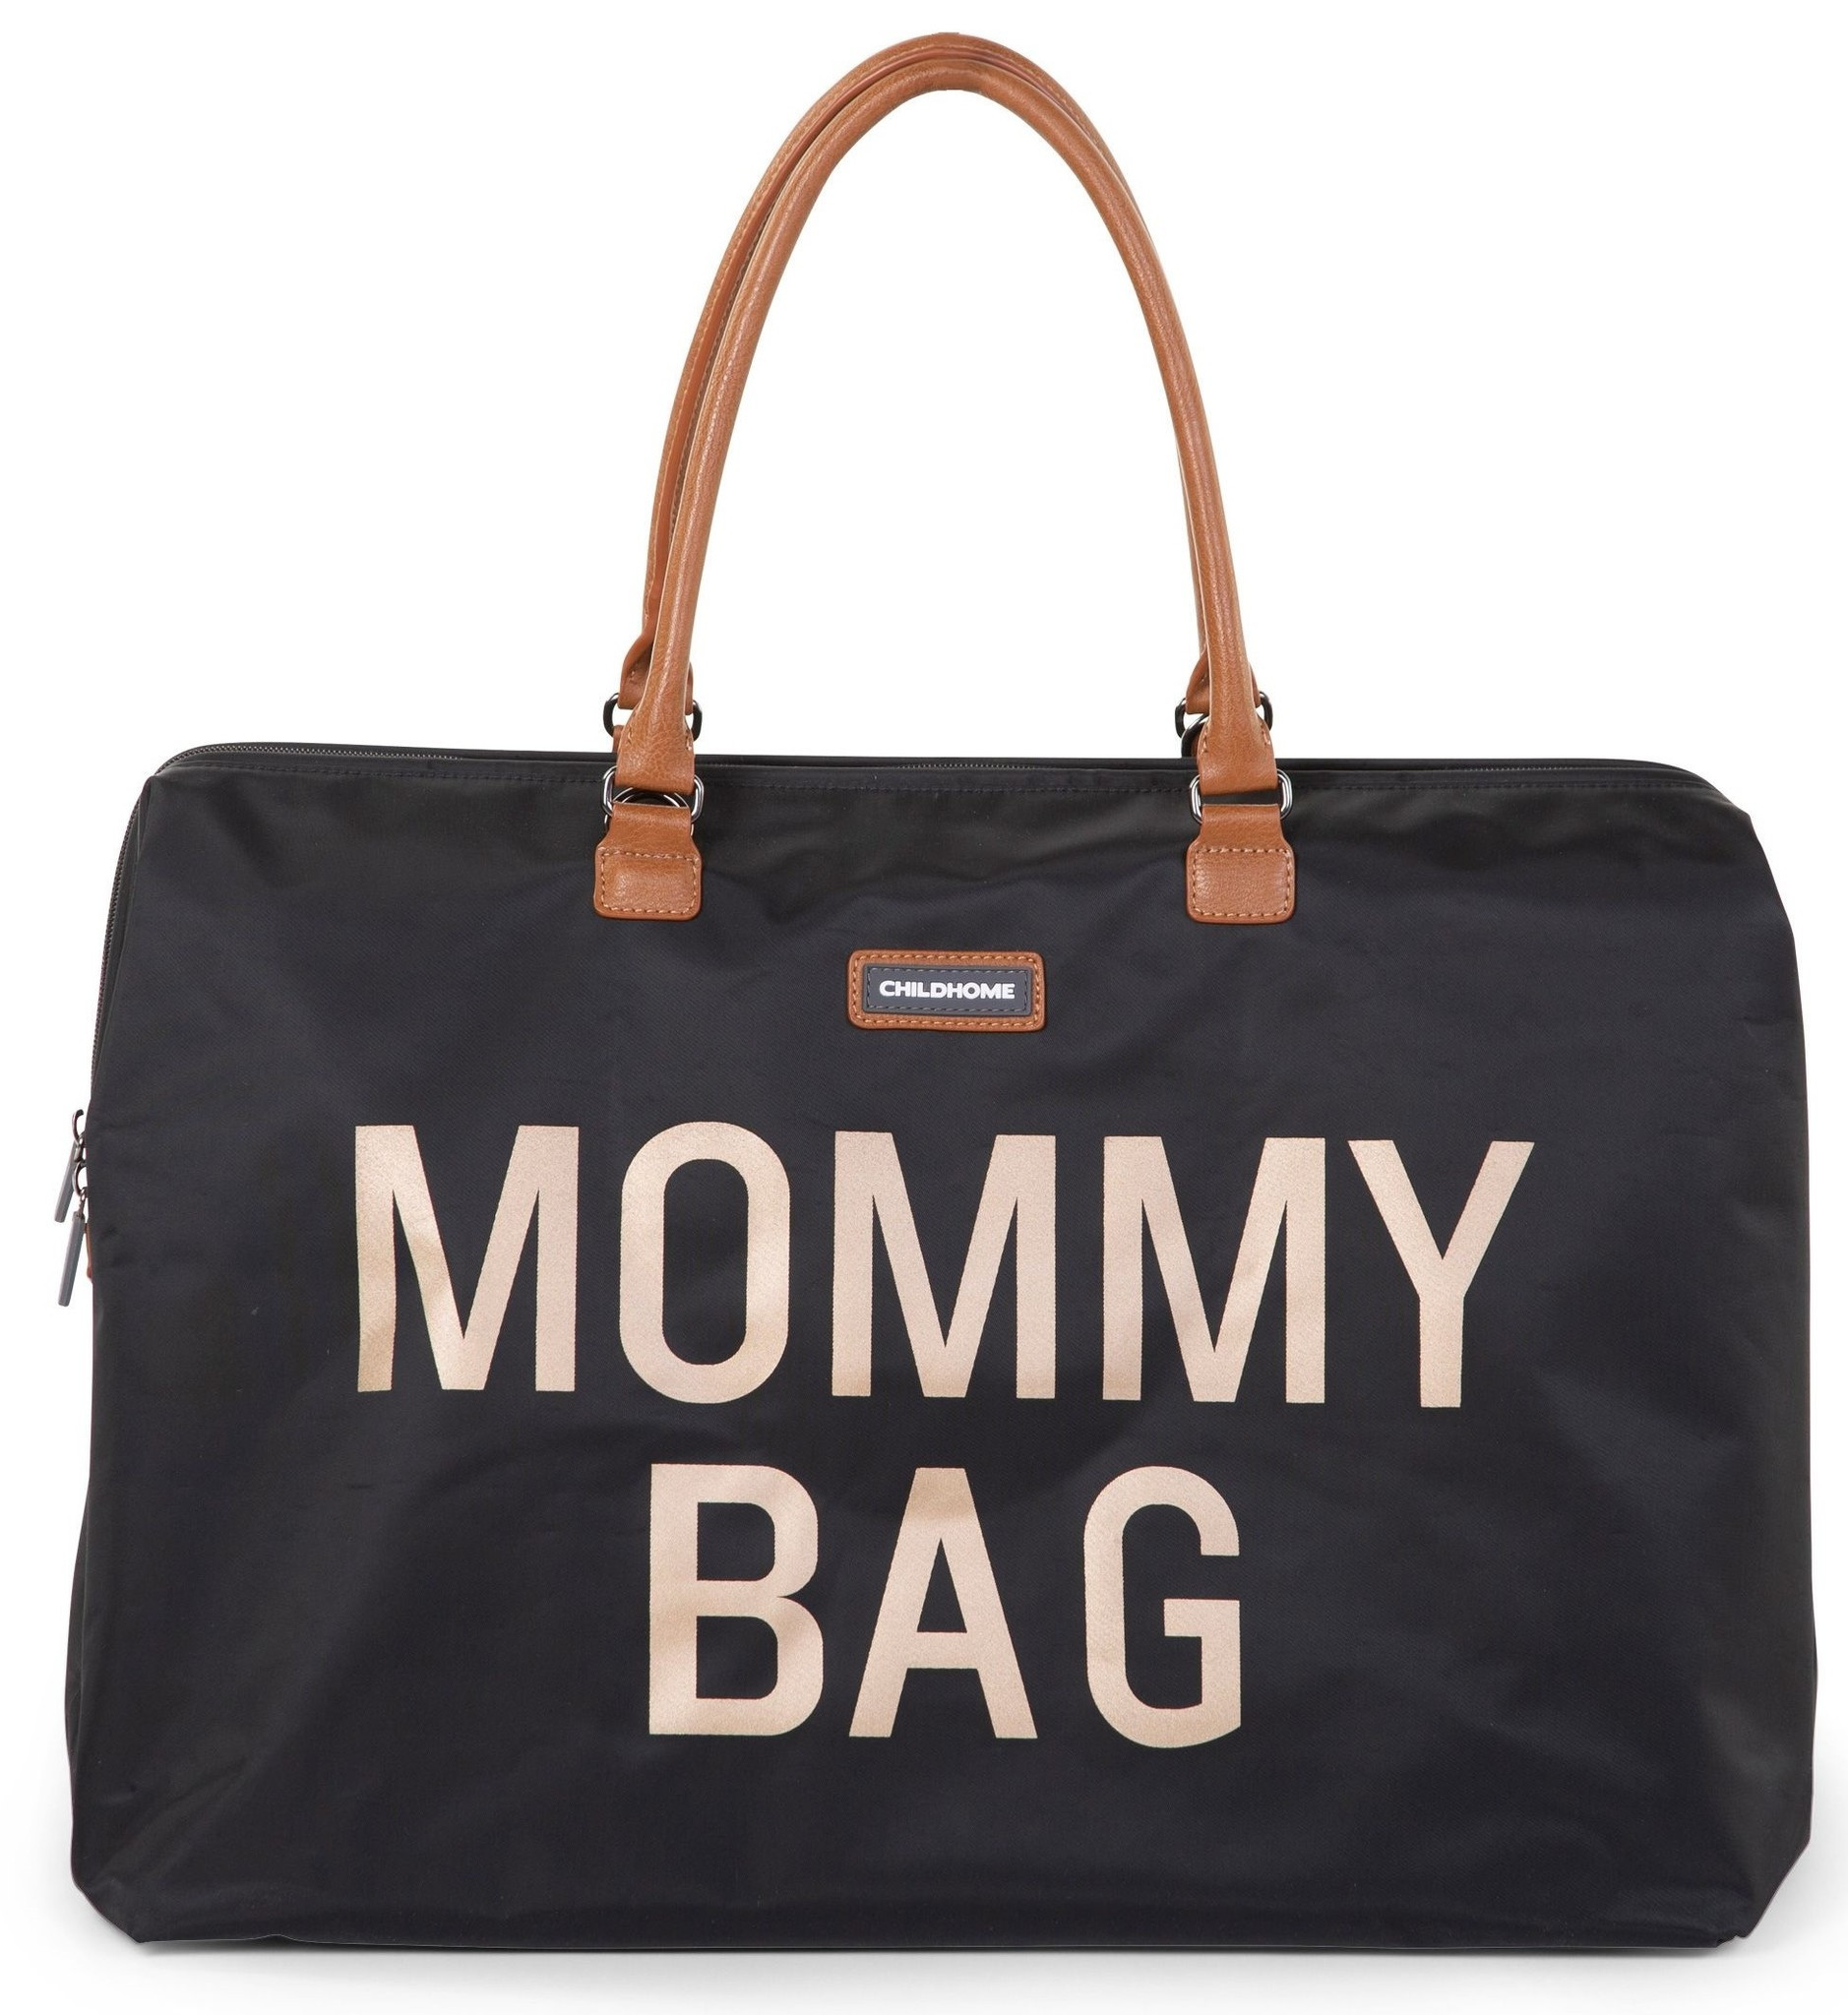 Mommy Bag Grote Luiertas Verzorgingstas Zwart Goud